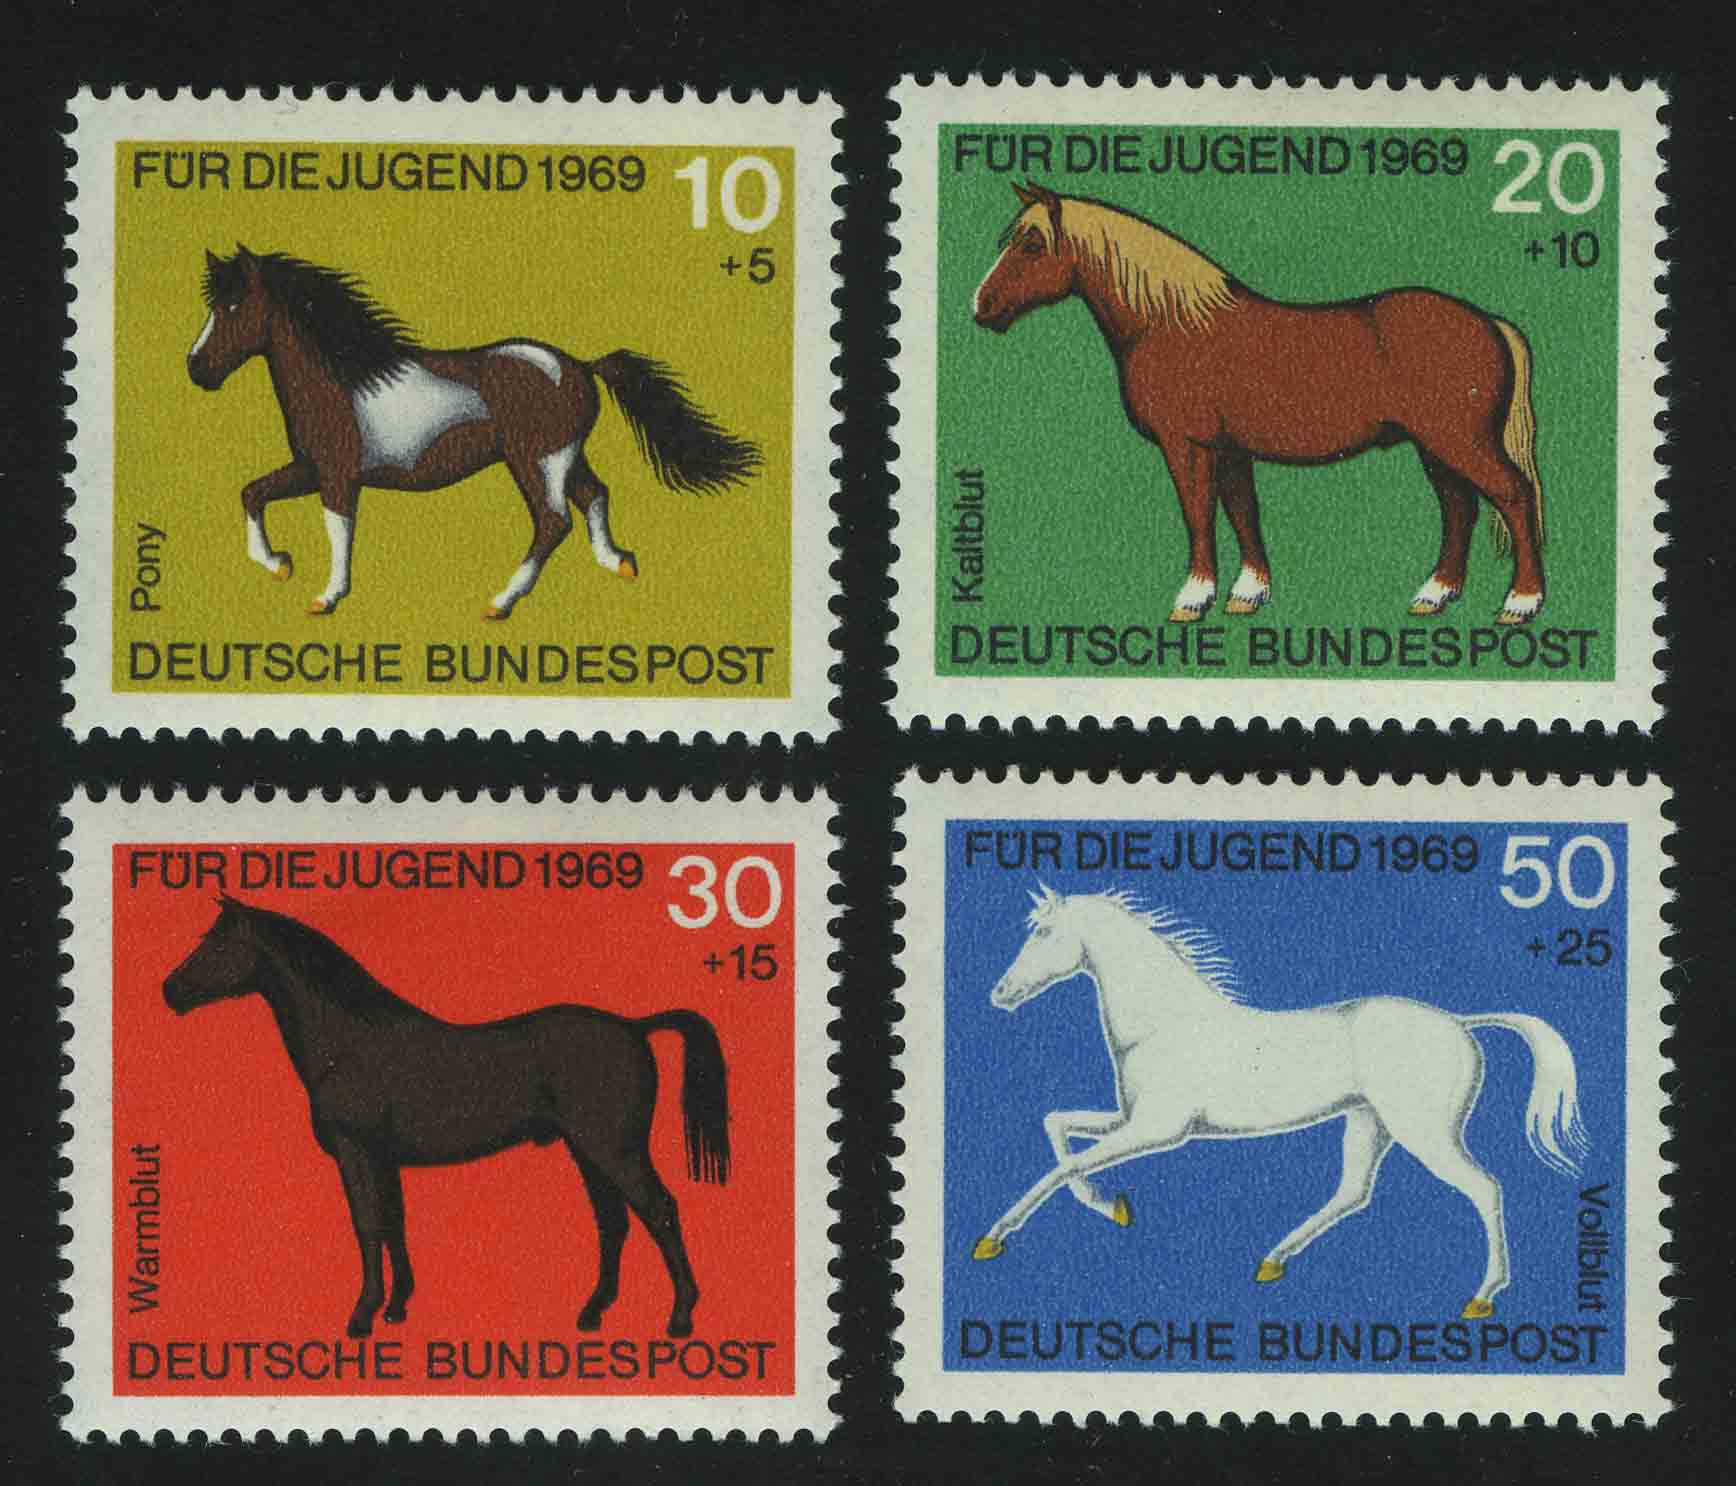 Лошадка марка. Марки лошади. Лошади на почтовых марках. Бренд с лошадью.